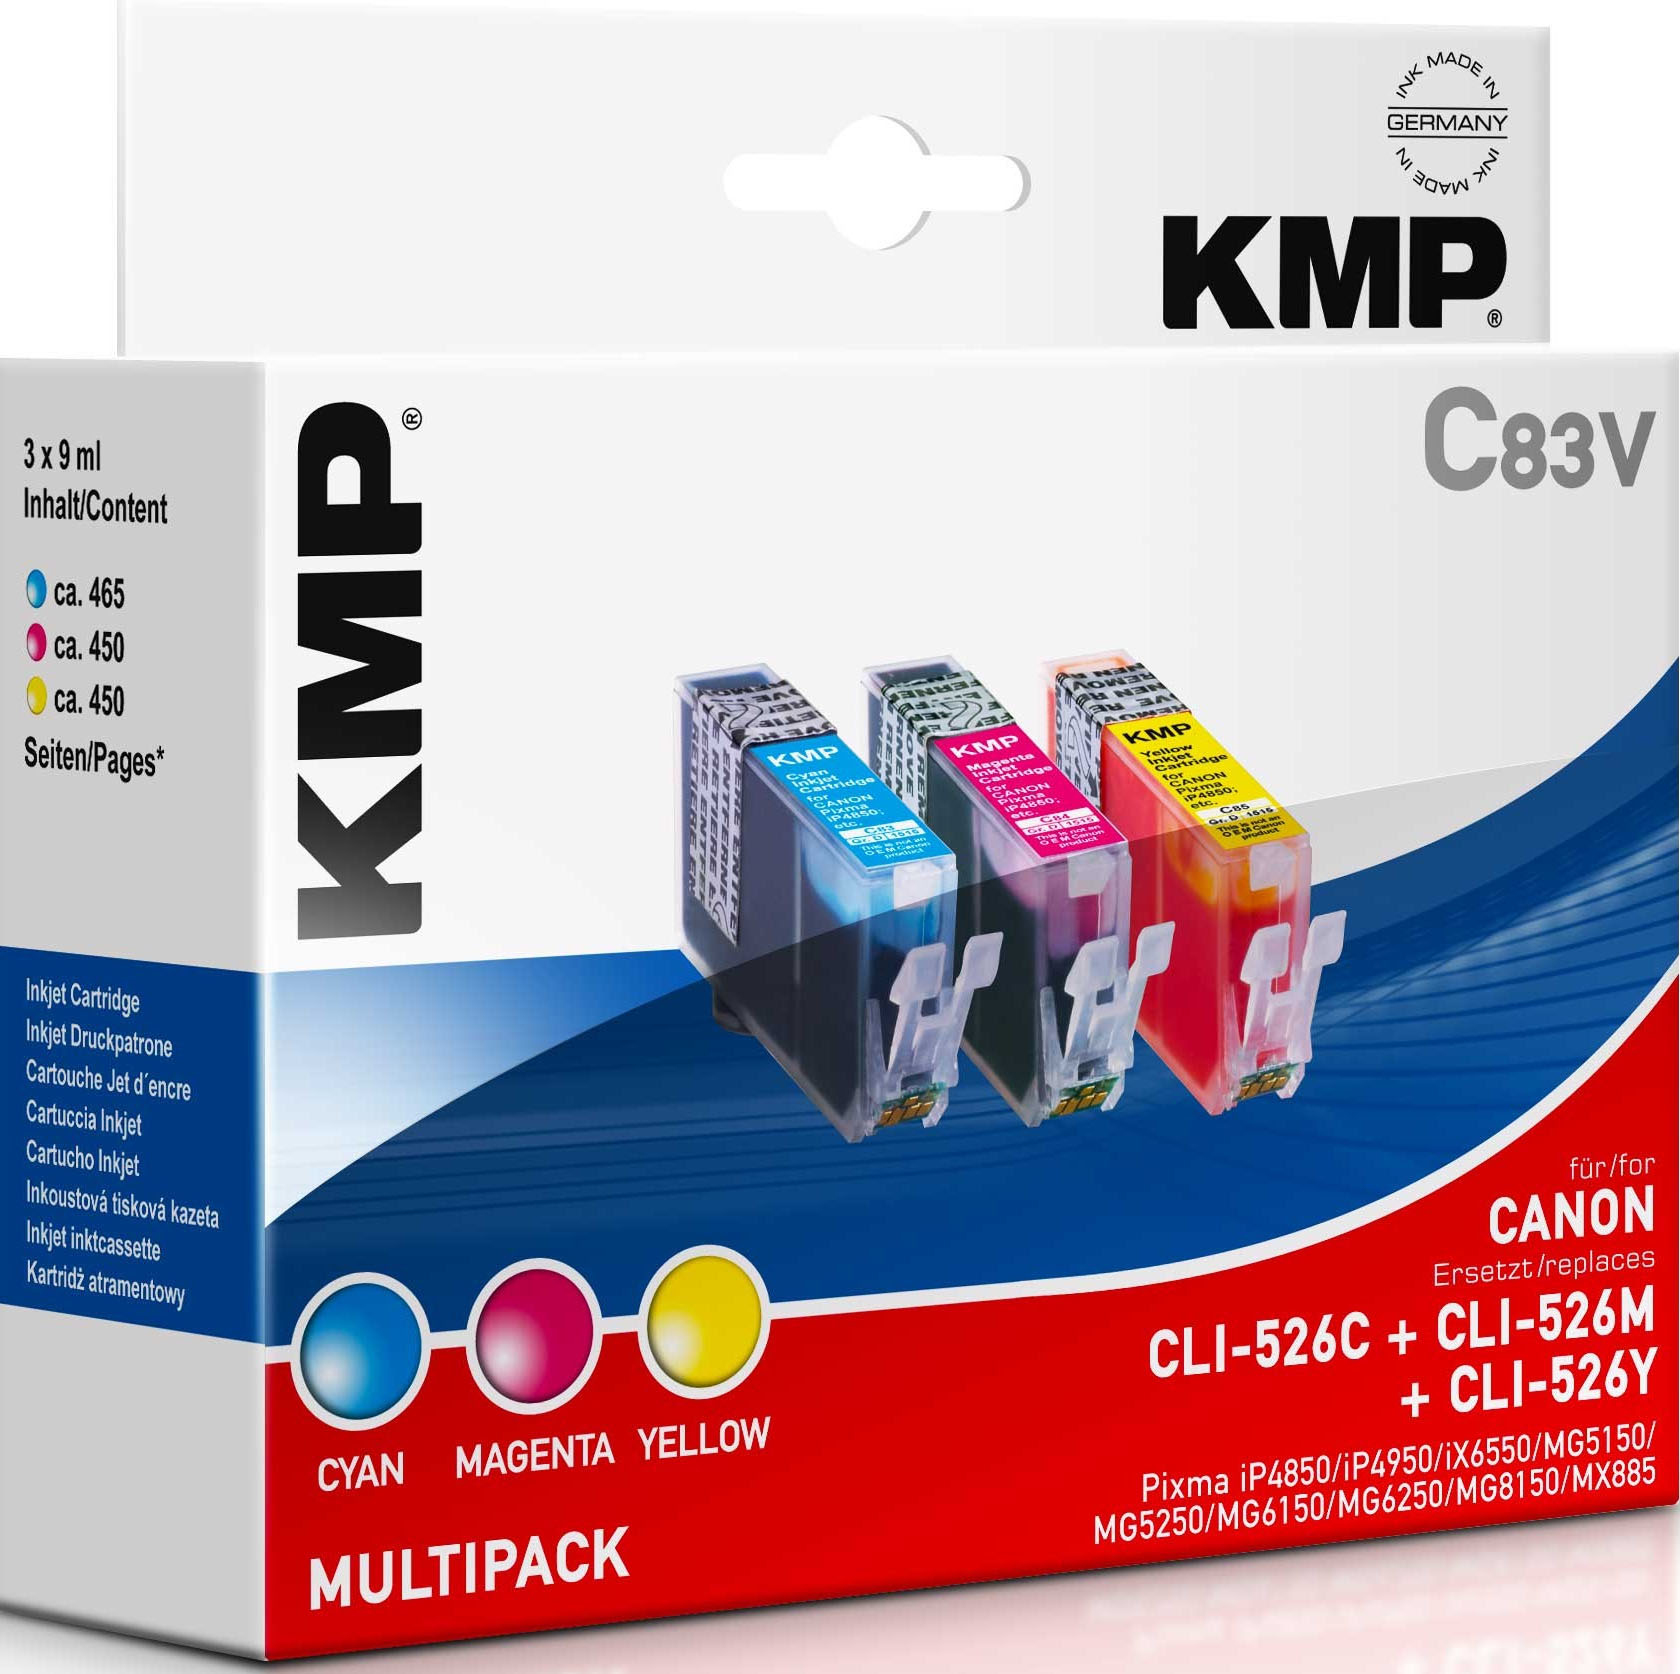 KMP C83V multi pack / cyaan, geel, magenta